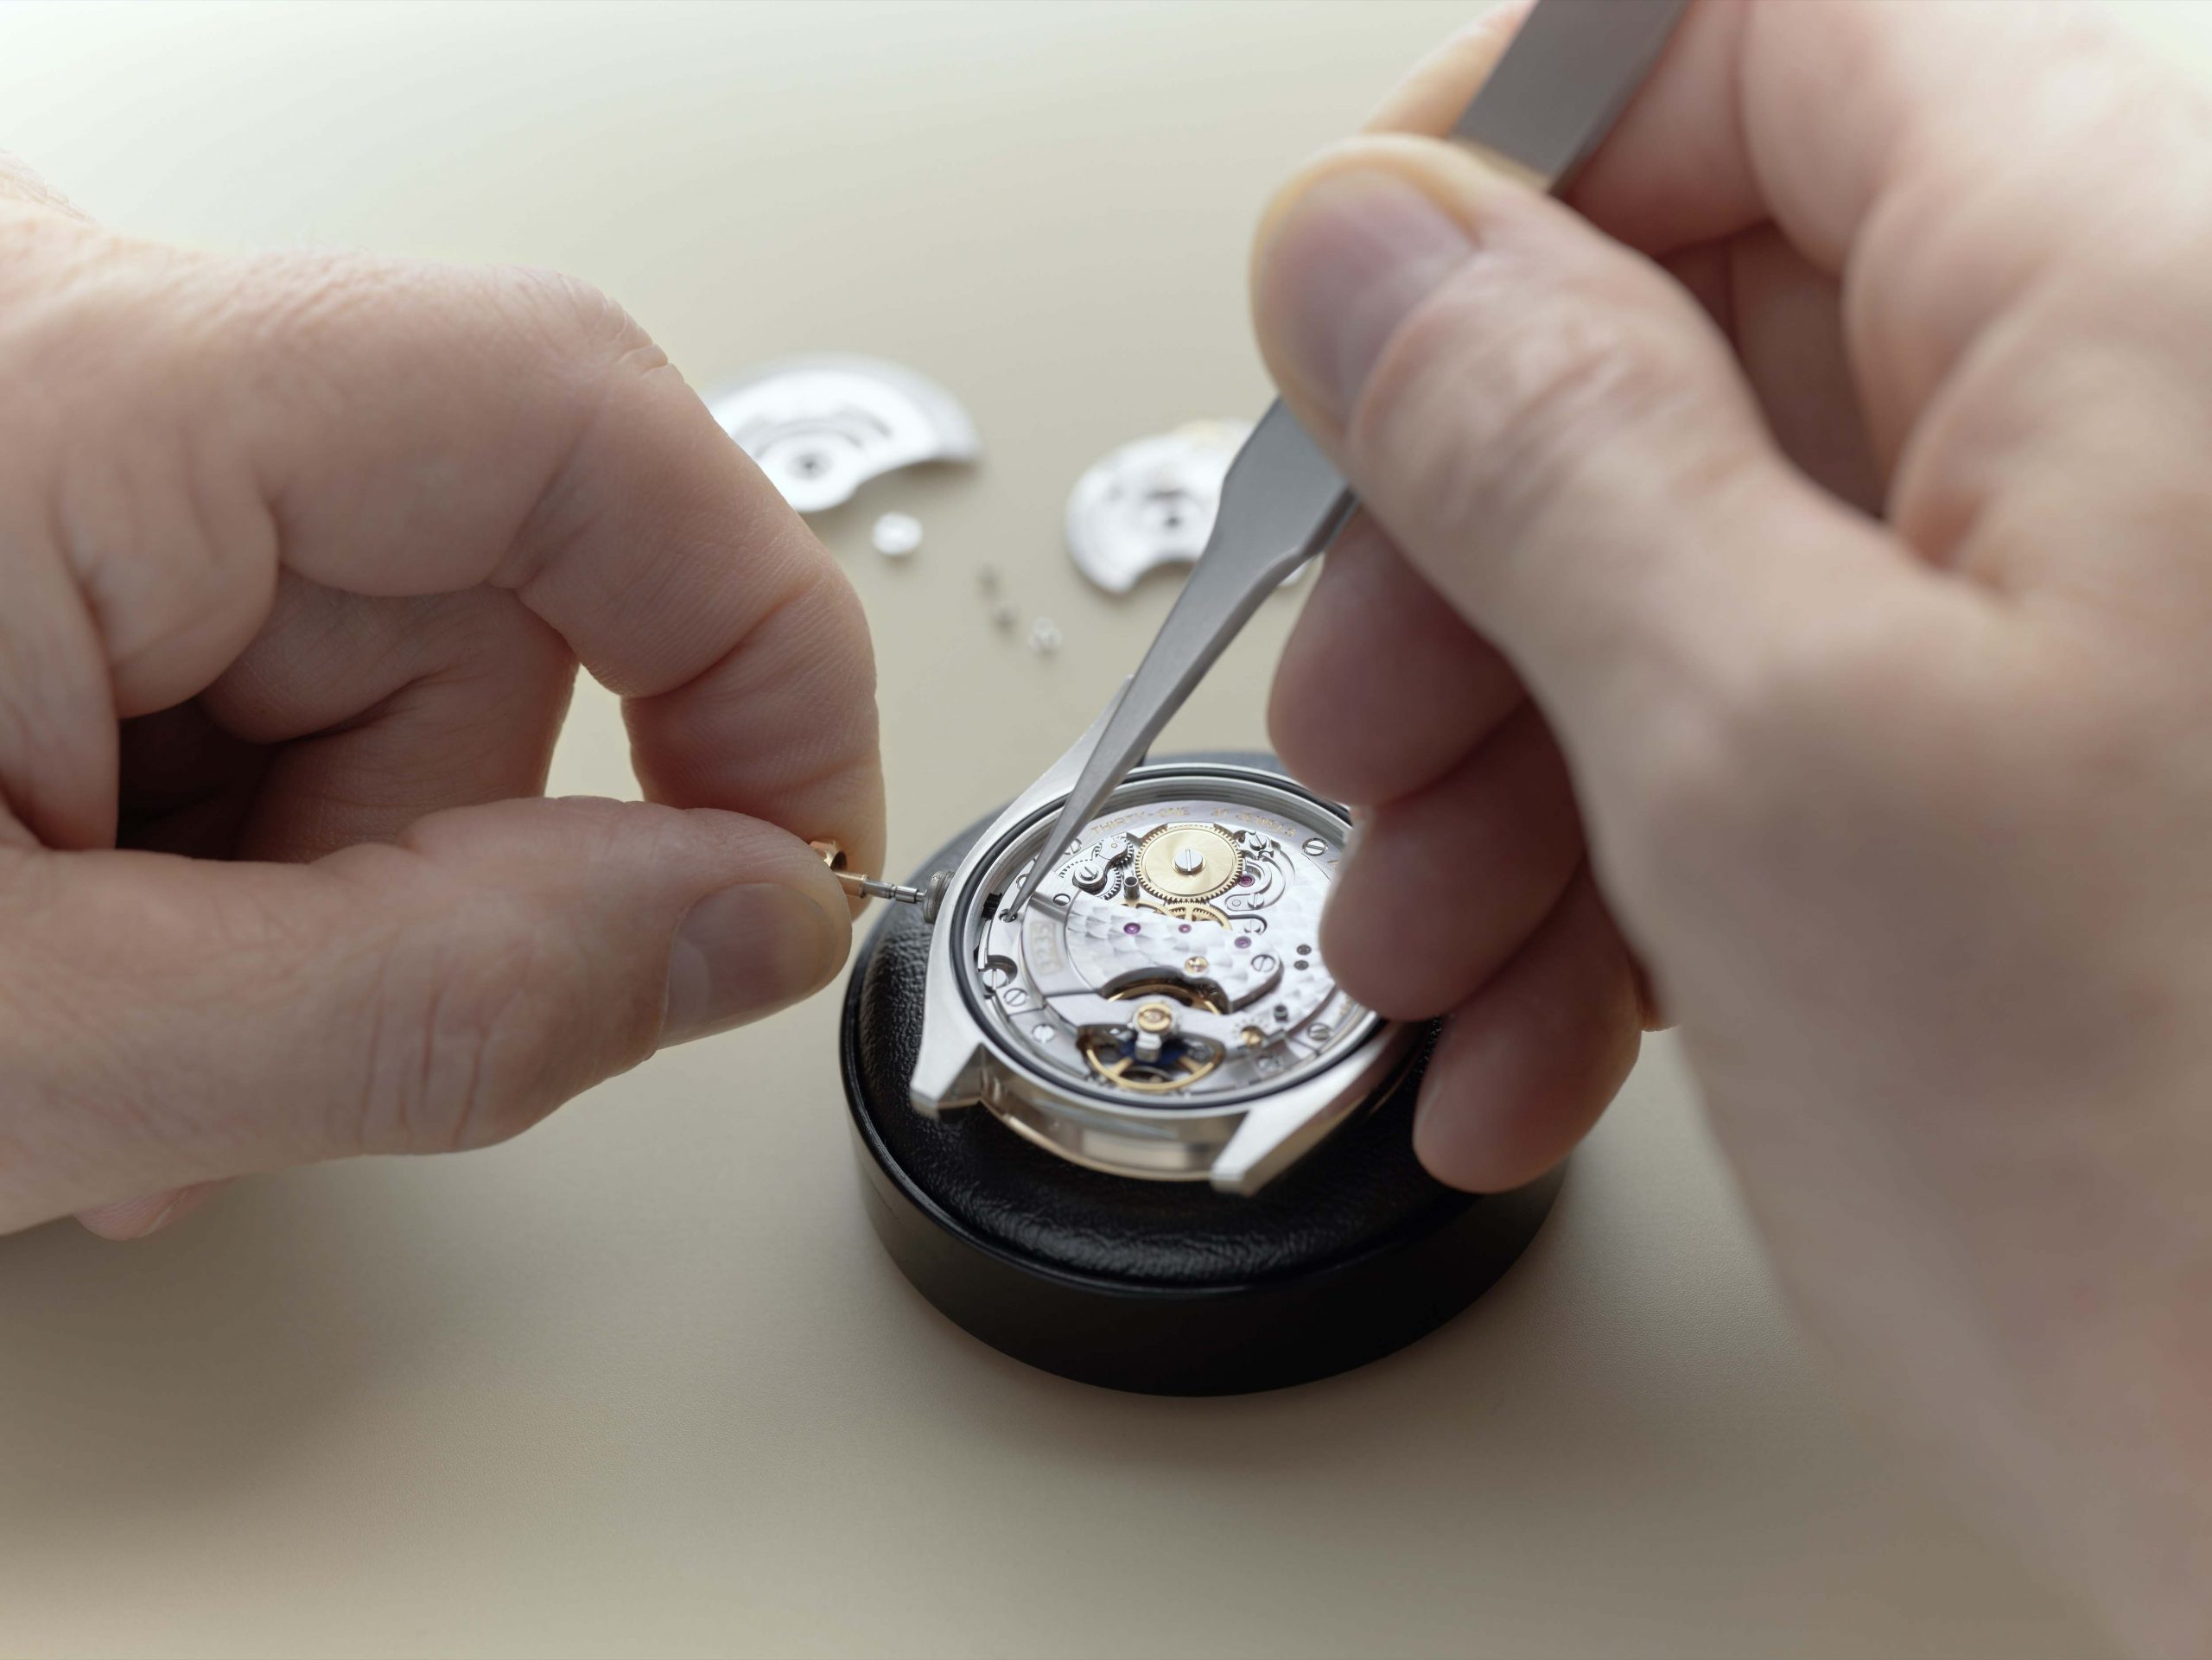 Rolex World Service - Nhà chế tác đồng hồ tỉ mỉ vặn dây cót để tháo lớp lõi ra khỏi đồng hồ.